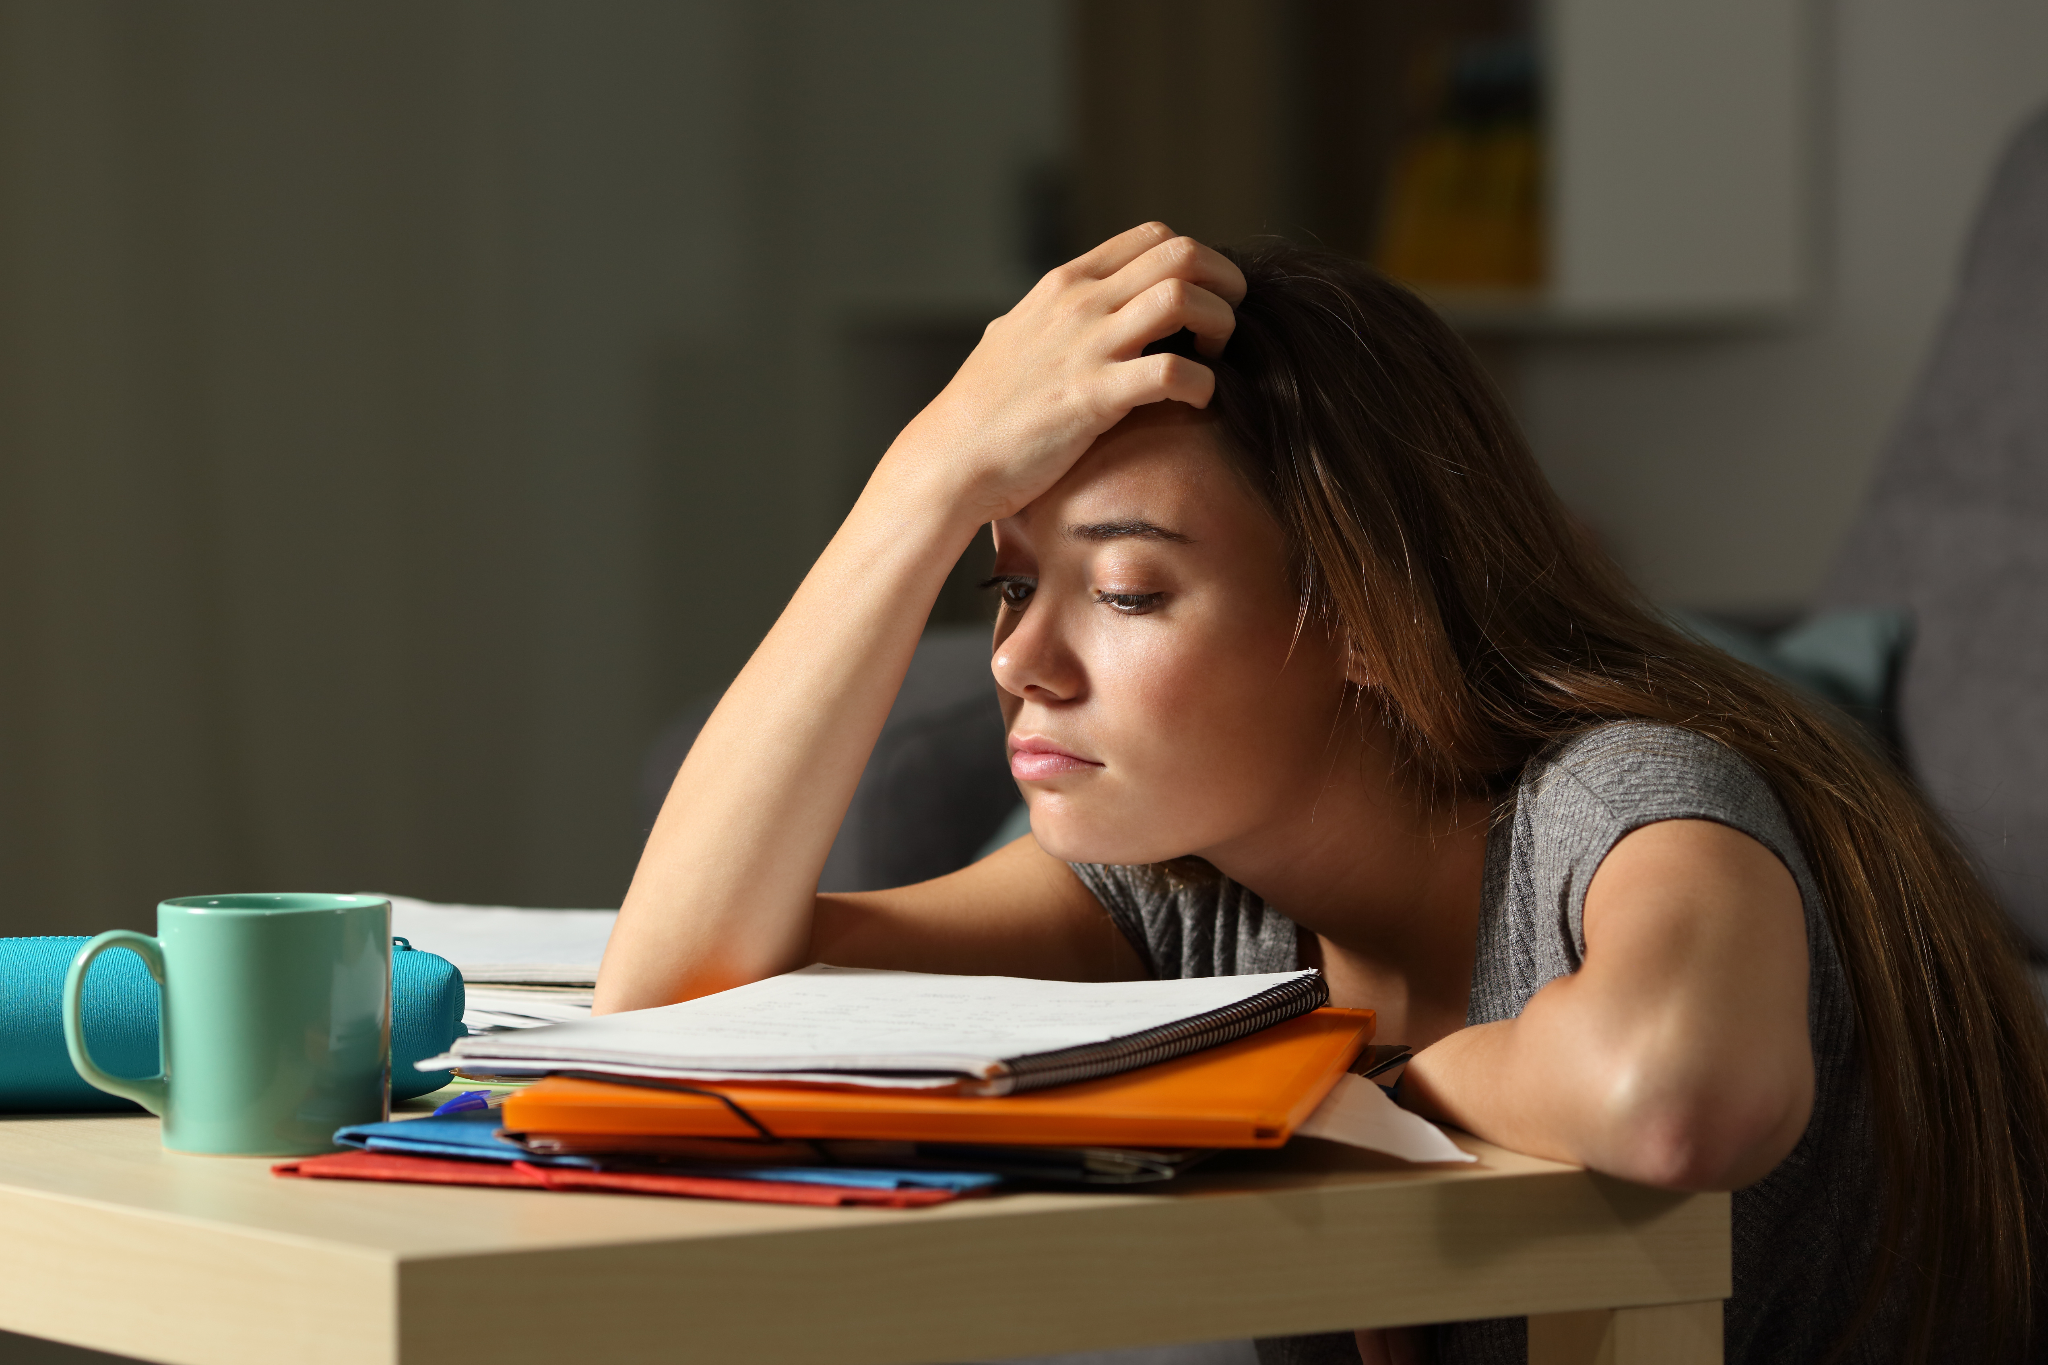 Woman lacking study motivation